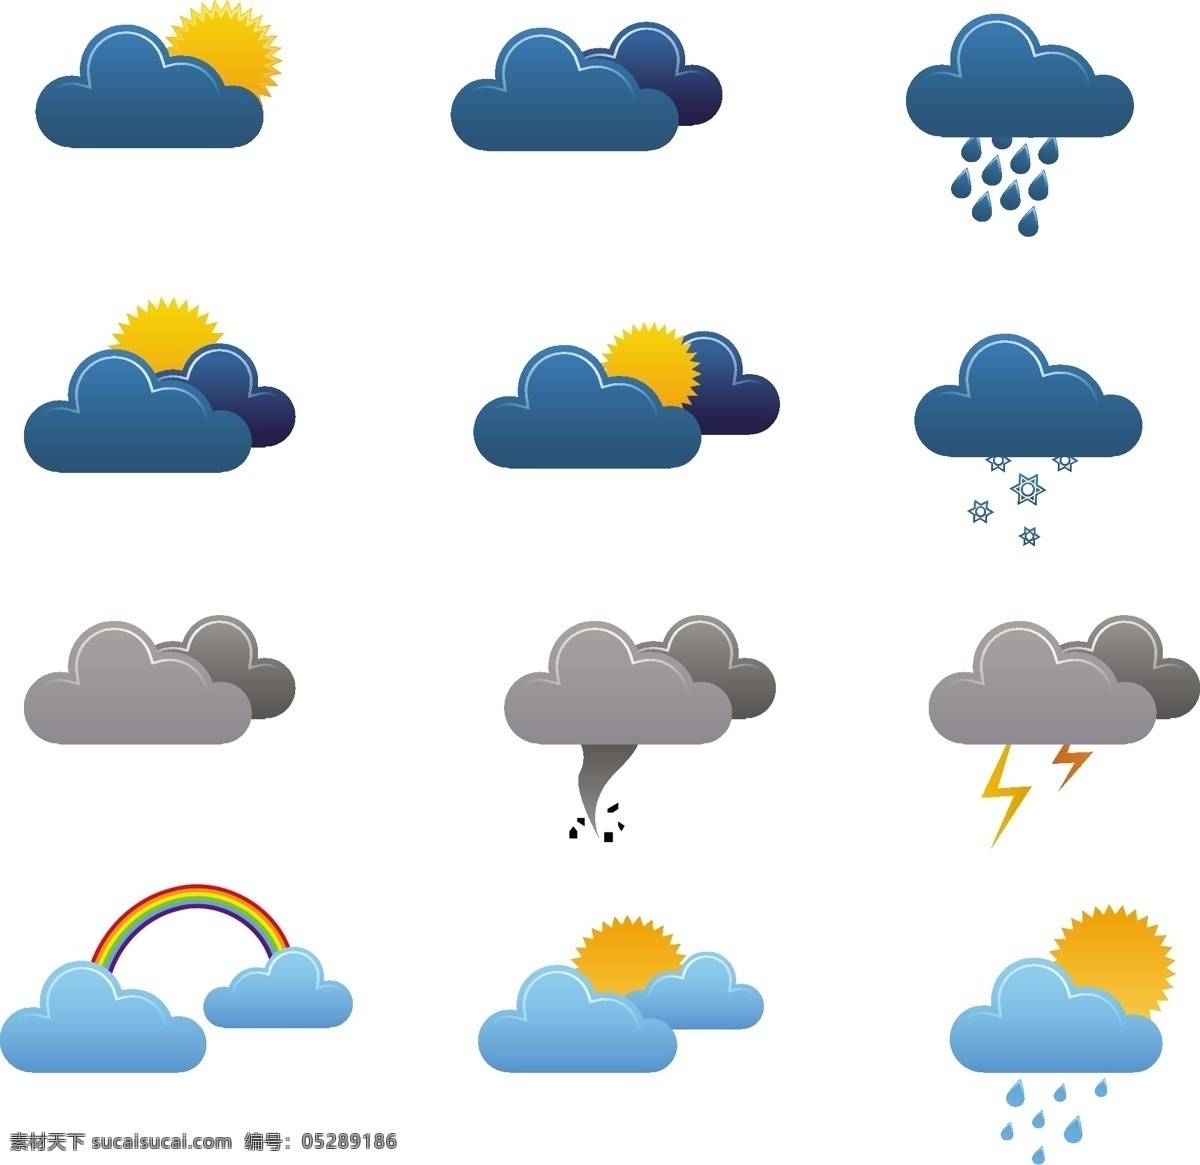 免费 天气 矢量 图标 天气图标 商业 使用 可爱 的卡 通 大风天气图标 自由 白色